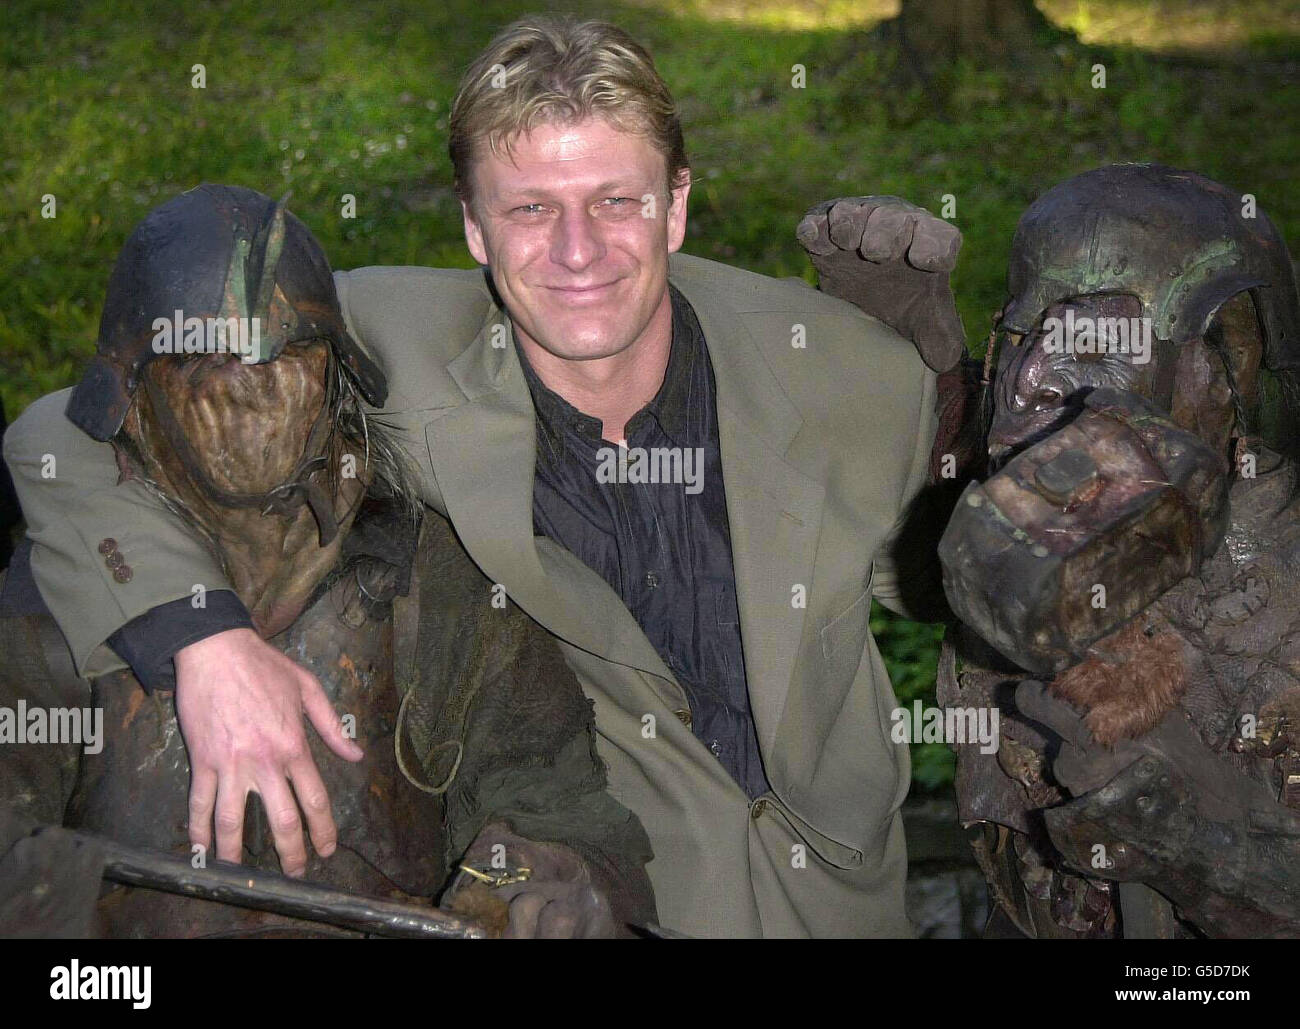 Sean Bean incontra alcuni personaggi troll, quando arriva per la festa del prossimo film Lord of the Rings in cui è protagonista. Foto Stock